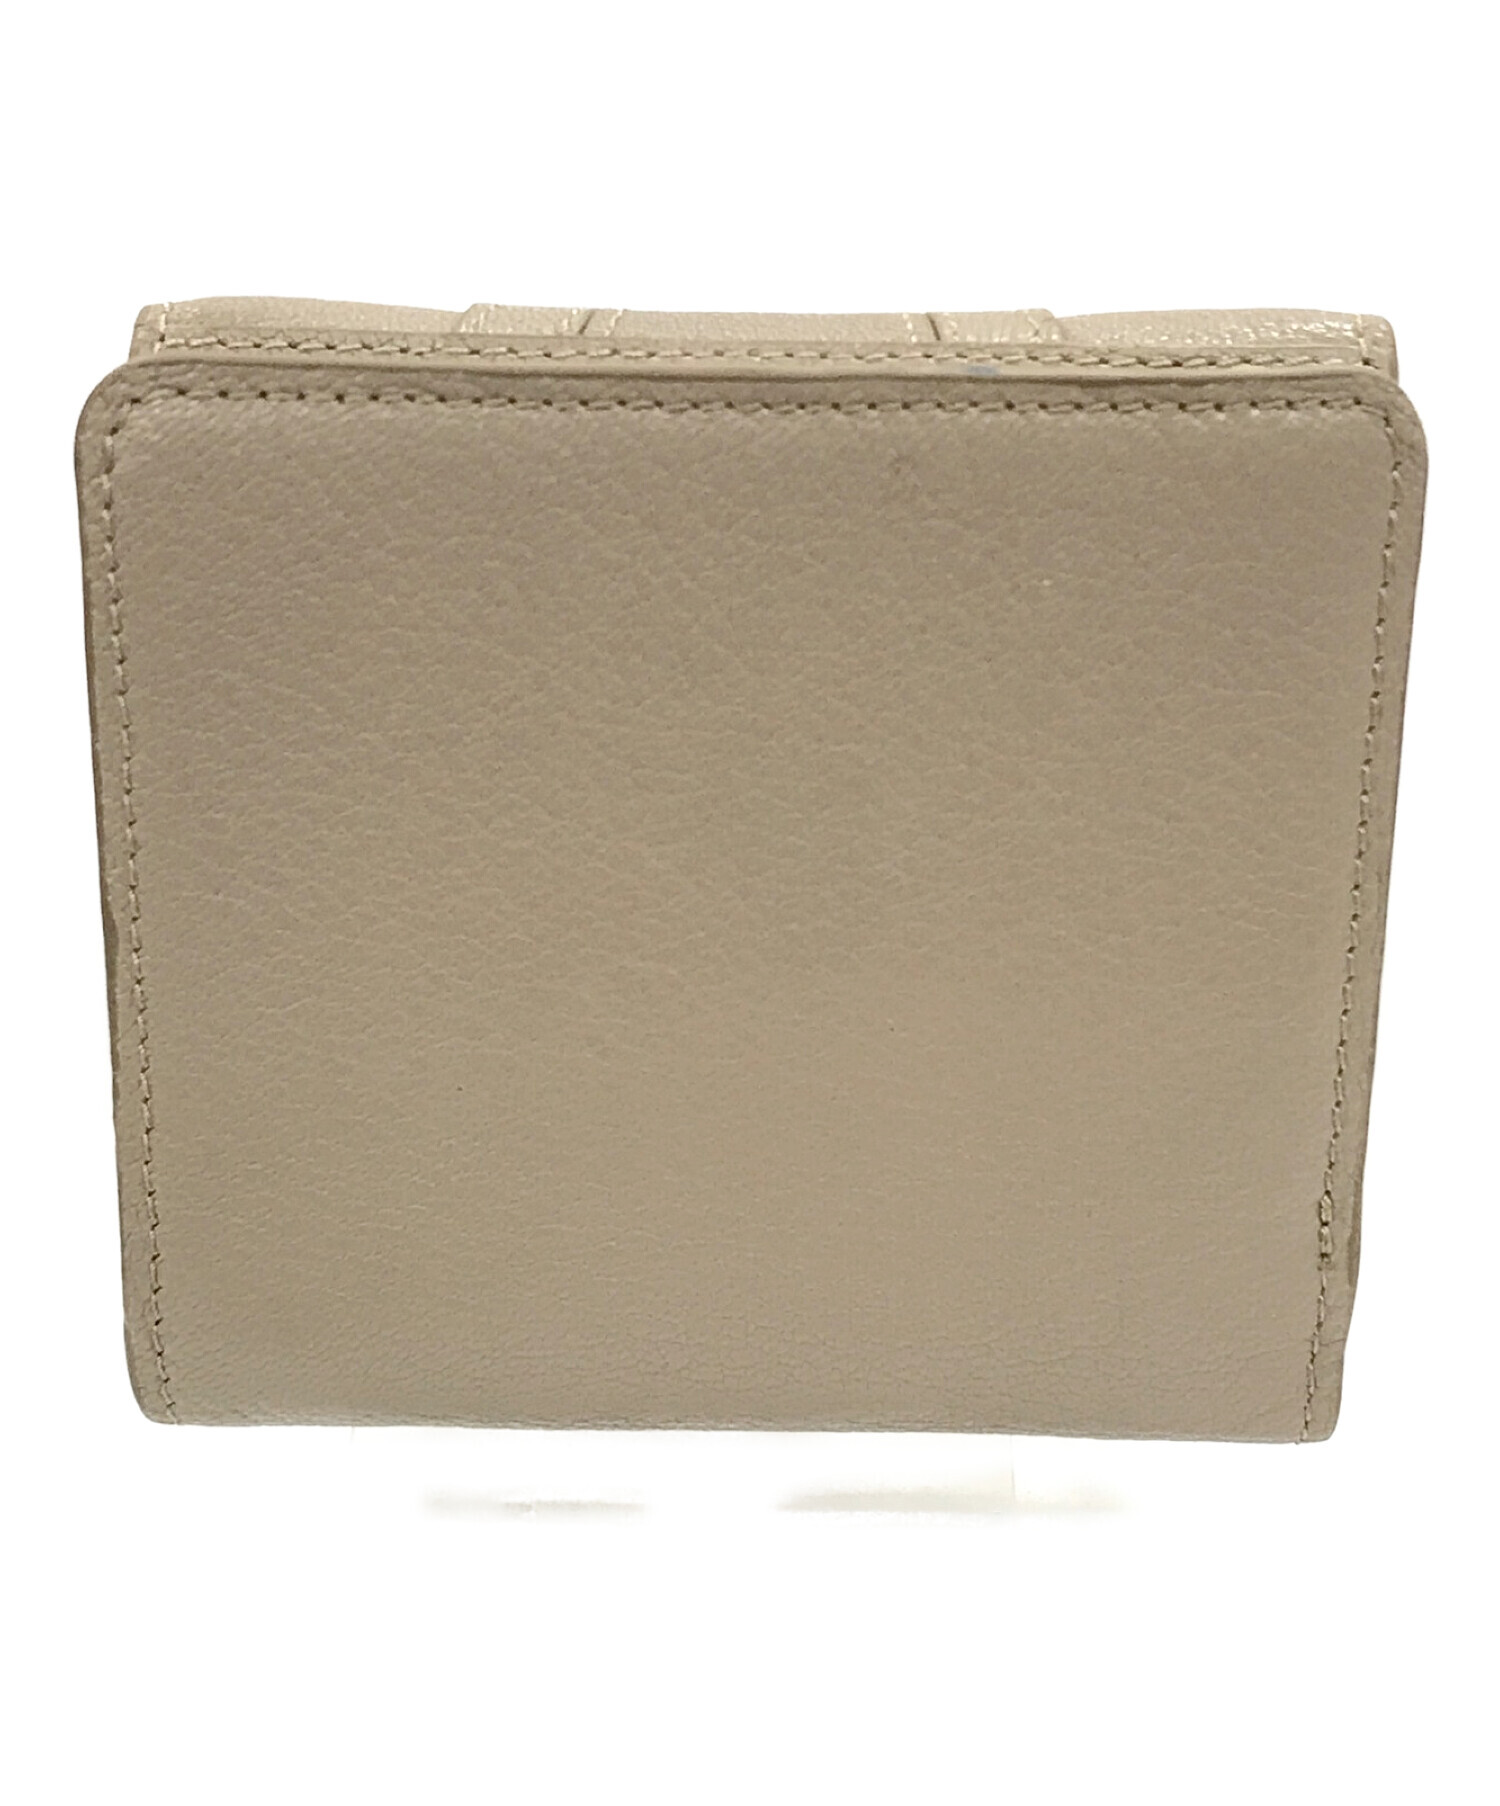 SEE BY CHLOE (シーバイクロエ) 2つ折り財布 ベージュ サイズ:実寸サイズにてご確認ください。